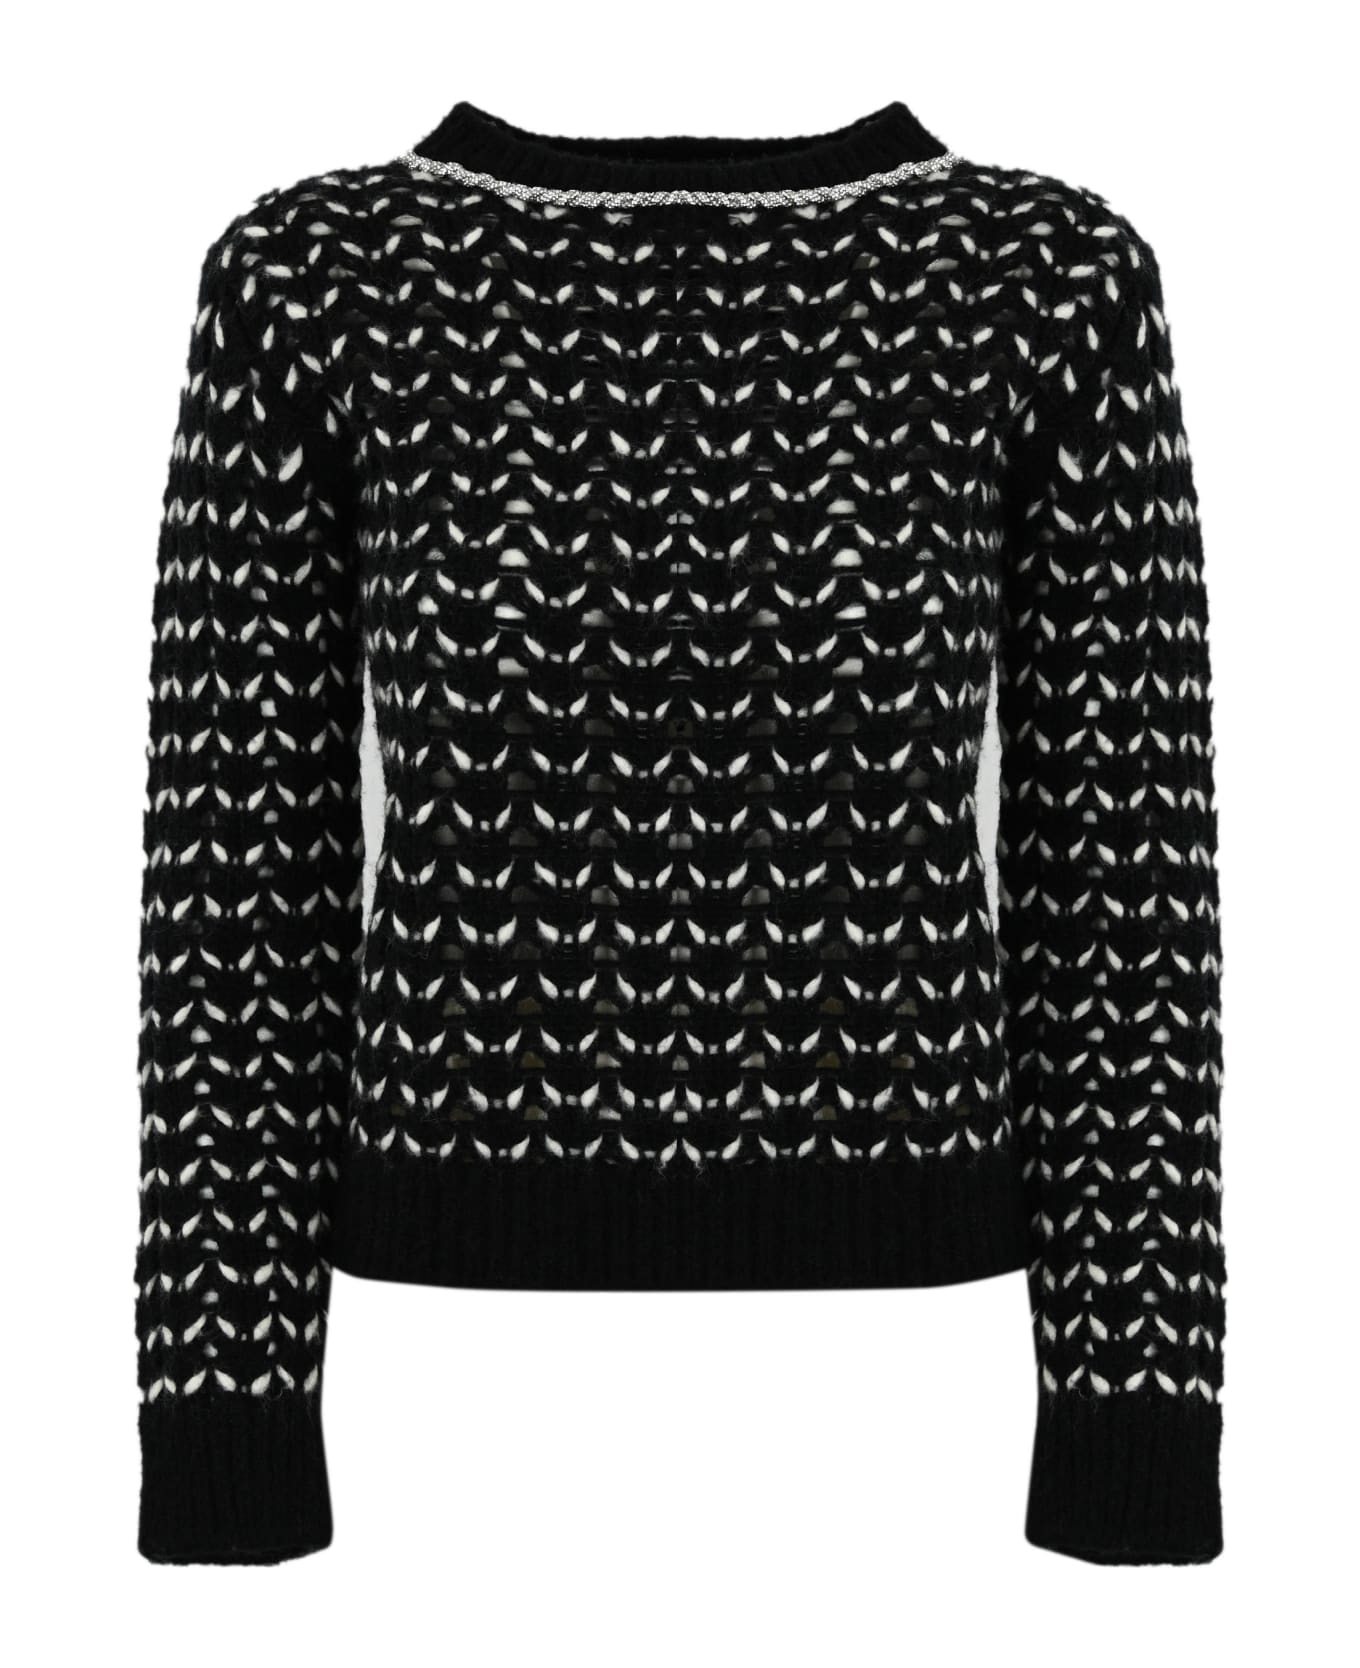 Max Mara Studio Wool Yarn Sweater - Black/white